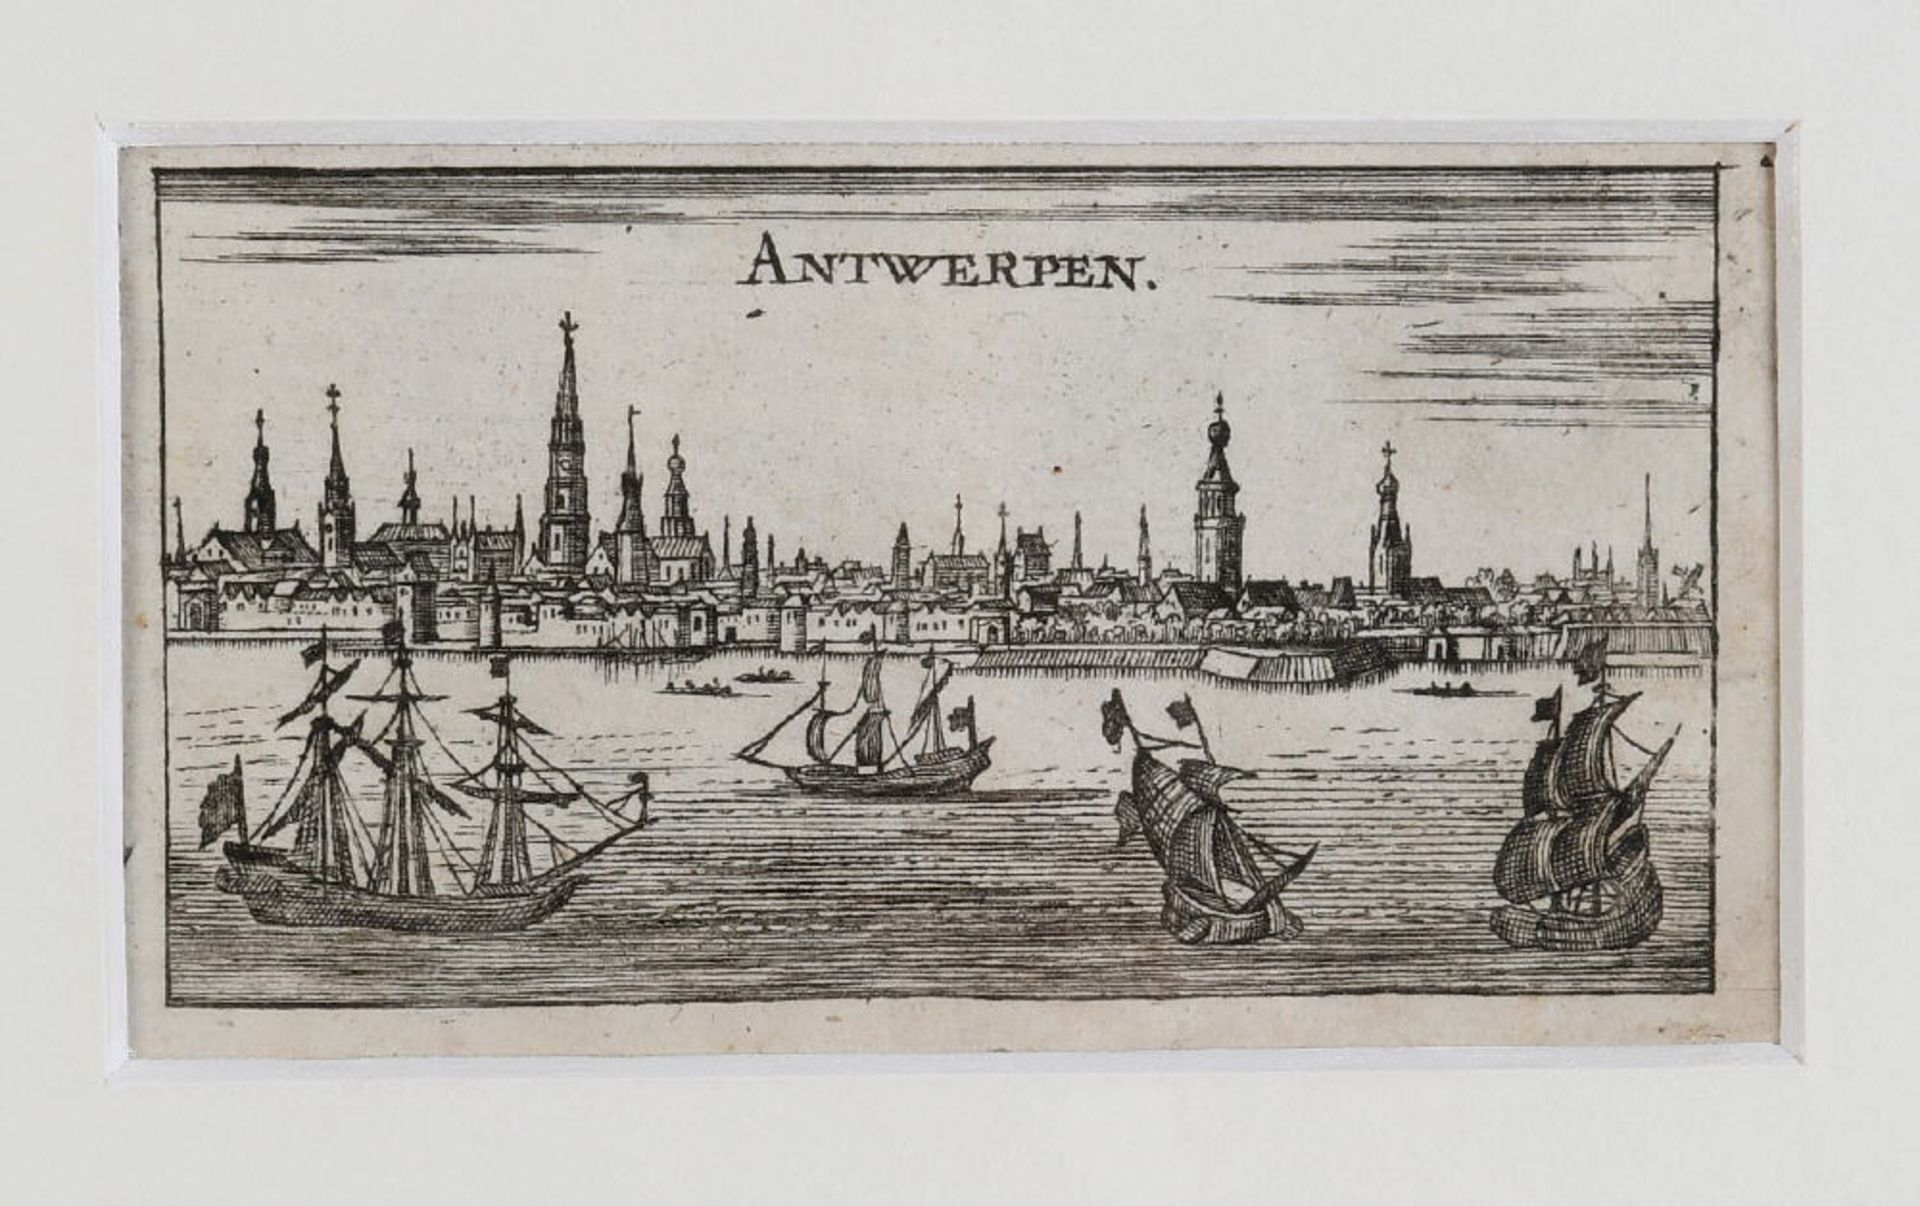 Antwerpen, GesamtansichtKupferstich, 6 x 11 cm, von Riegel, um 1690, PAntwerpen,